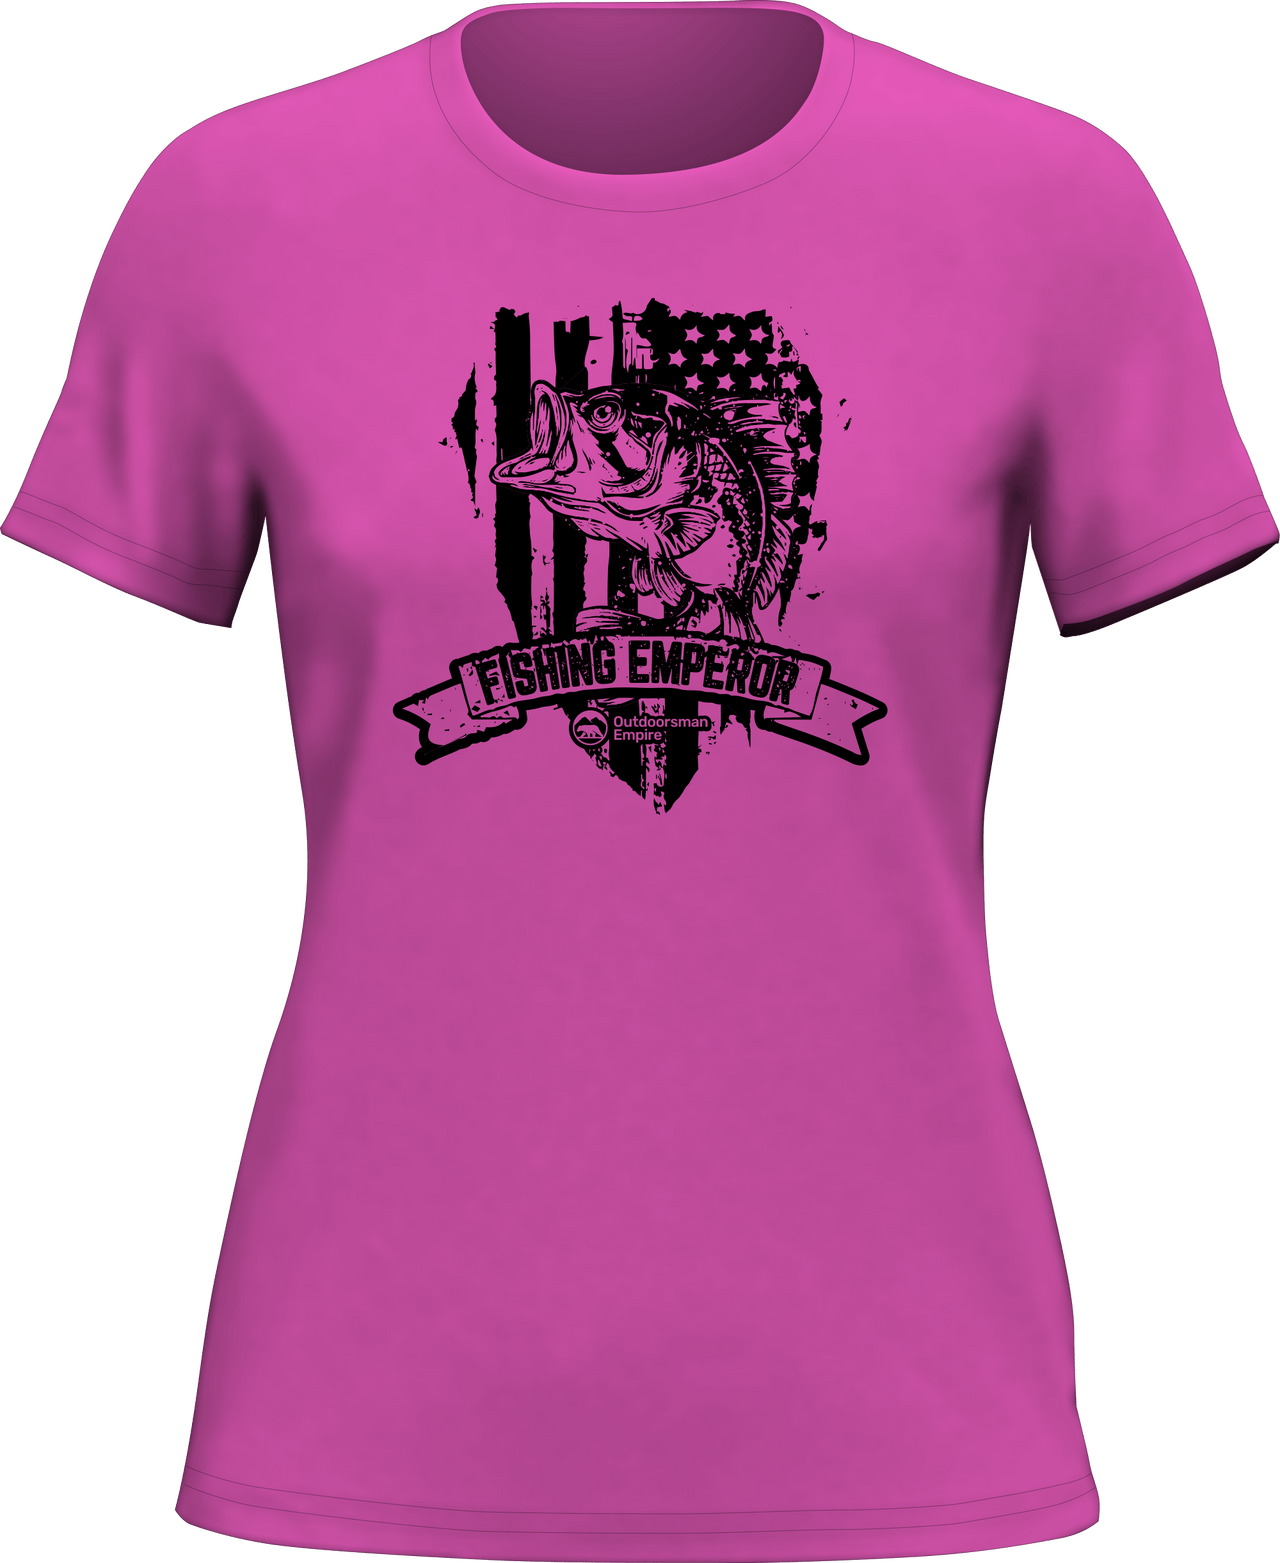 Fishing Emperor v3 T-Shirt for Women